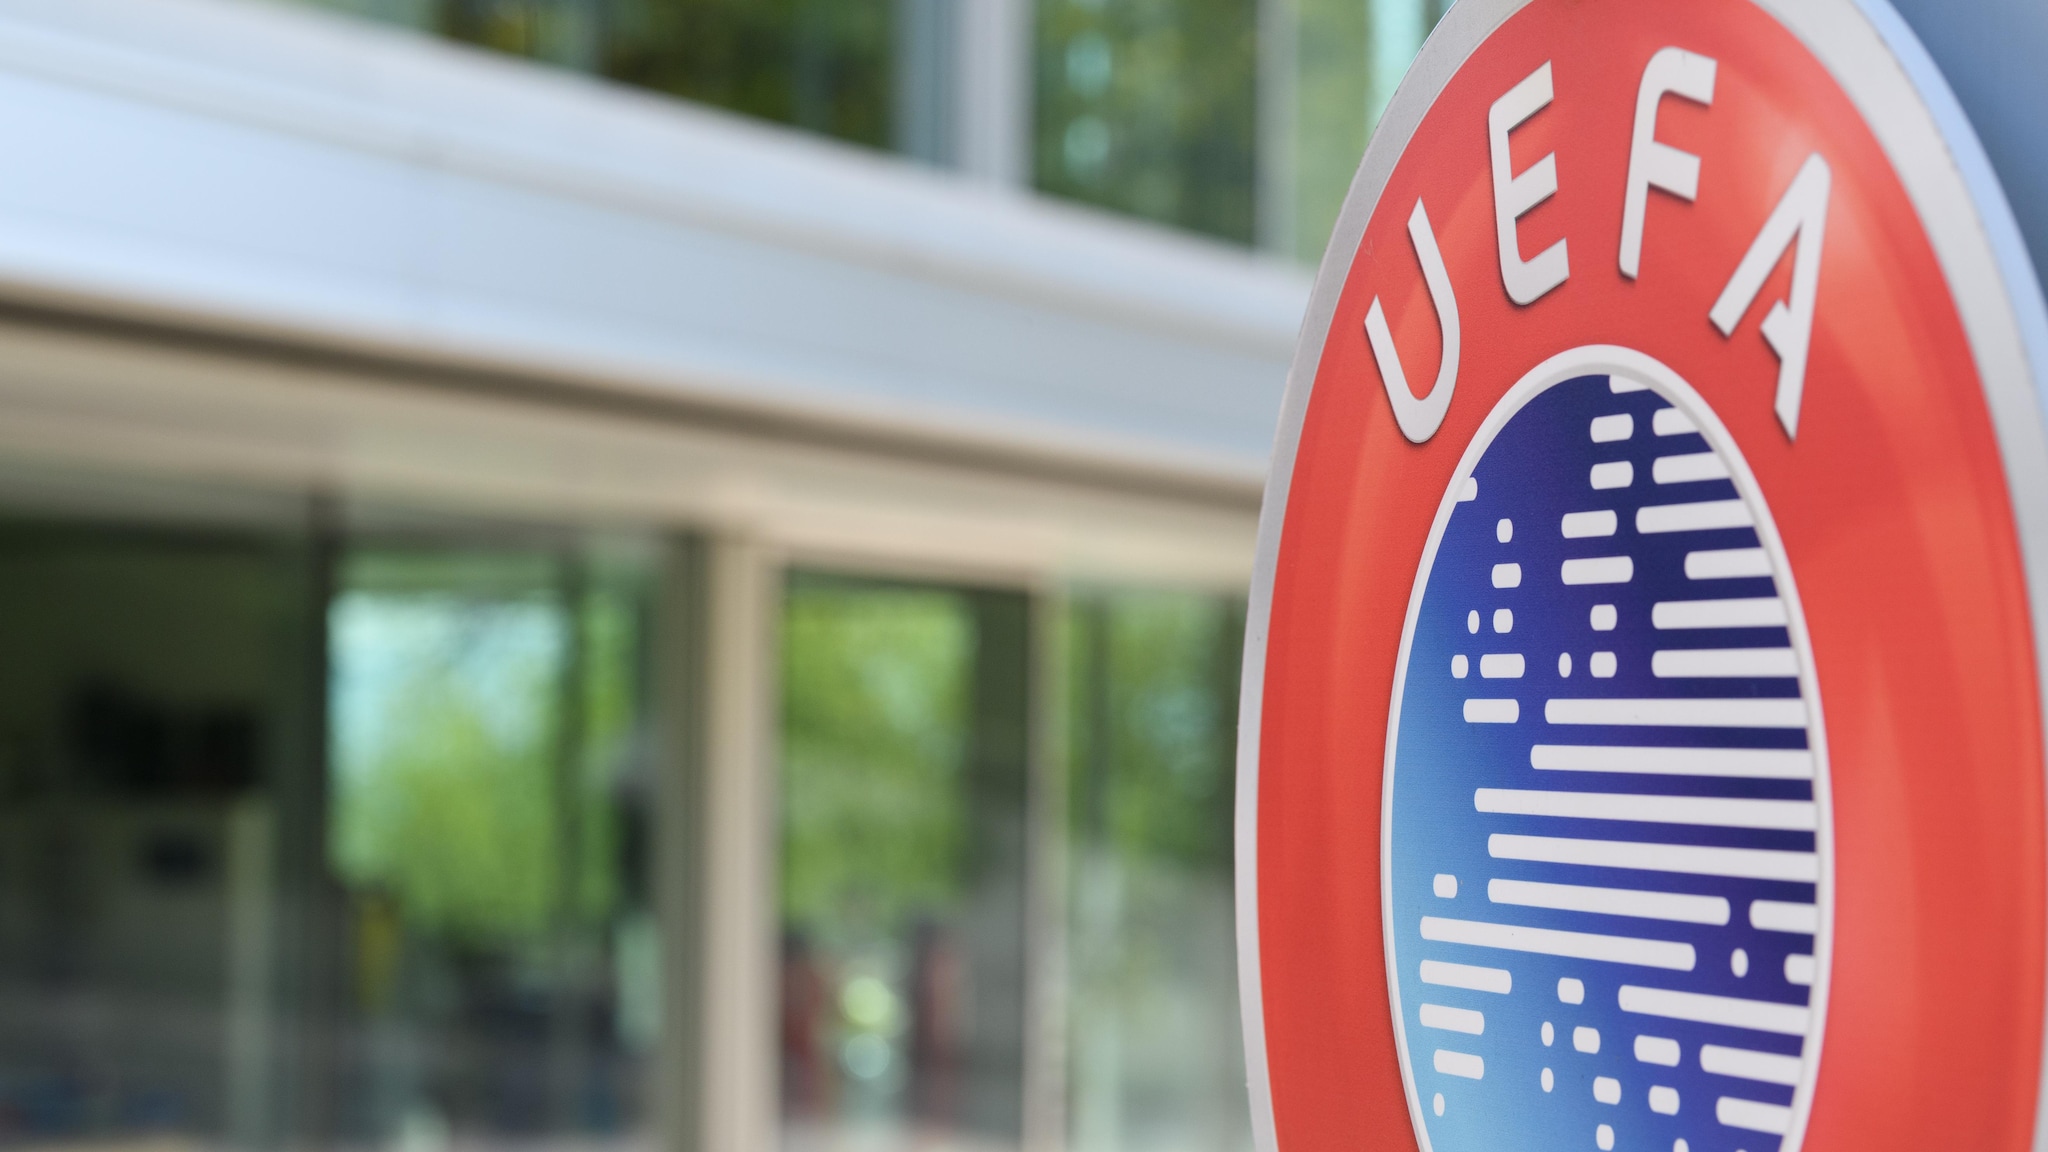 UEFA exclui seleção e equipas russas das provas europeias em 22/23